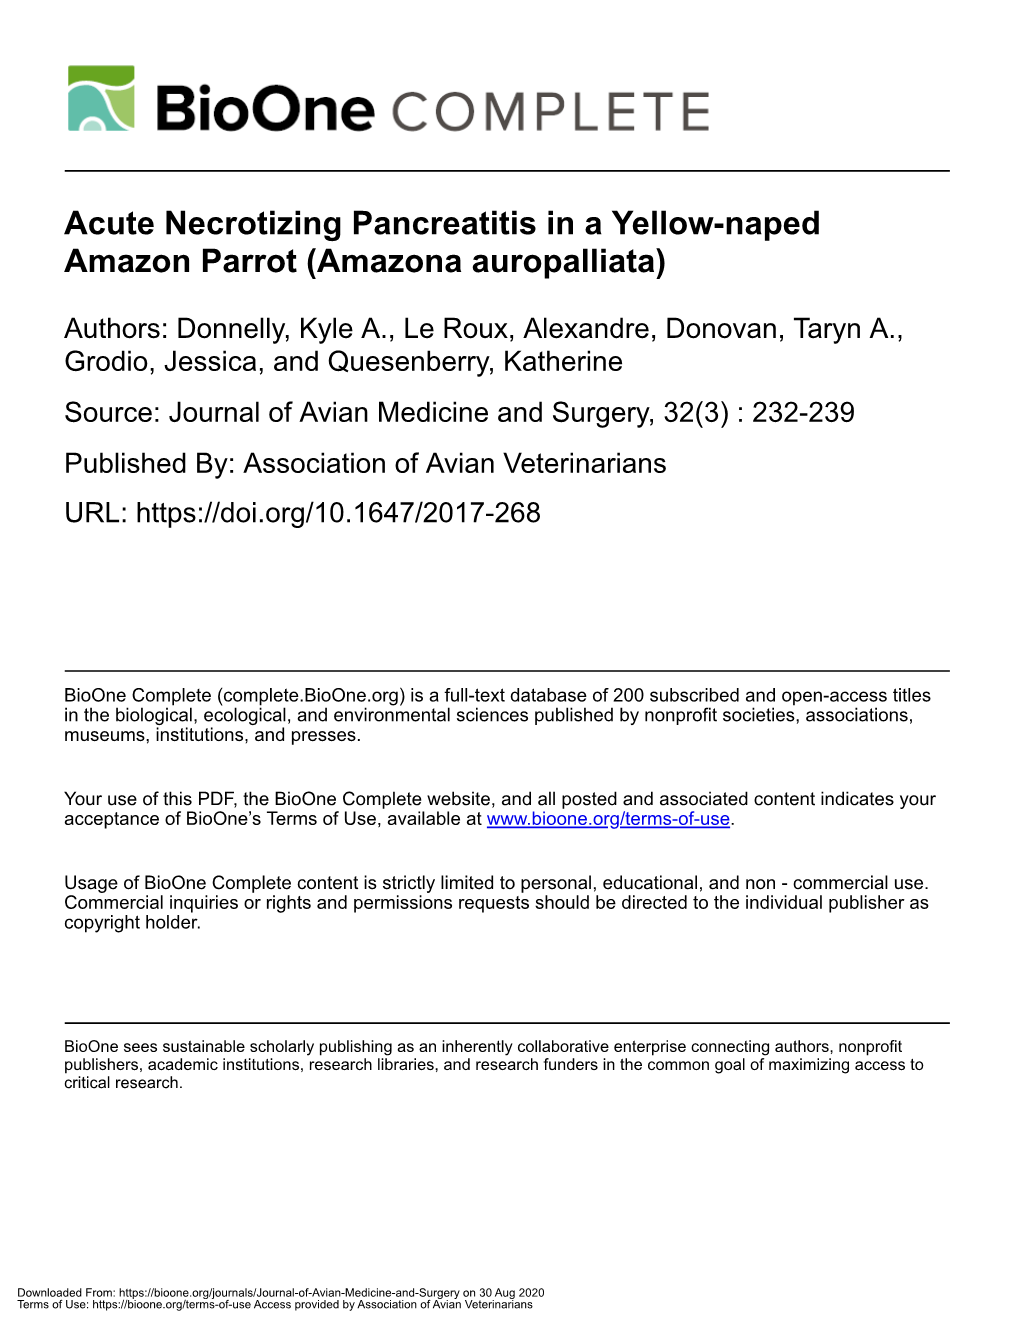 Acute Necrotizing Pancreatitis in a Yellow-Naped Amazon Parrot (Amazona Auropalliata)